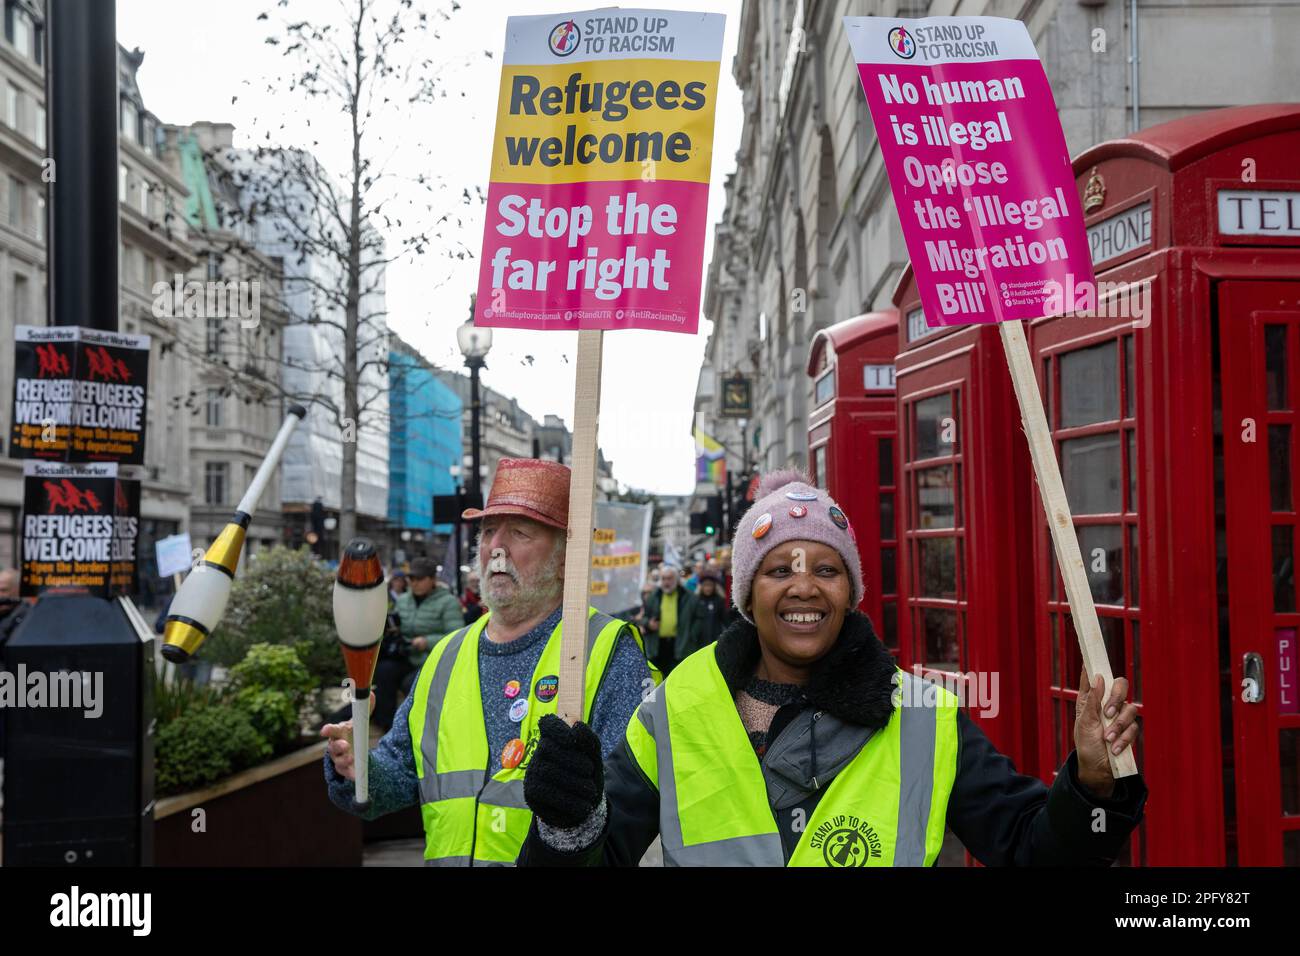 Les militants anti-racistes se réunissent à l'extérieur de la BBC, dans le cadre d'une manifestation "la résistance au racisme" organisée par Stand Up to racisme and the Trades Union Congress (TUC) dans le cadre d'une journée mondiale d'action contre le racisme, le 18 mars 2023 à Londres, au Royaume-Uni. Les orateurs ont exprimé leur colère et leur opposition à la loi controversée sur les migrations illégales du gouvernement. (Photo de Mark Kerrison/In Pictures via Getty Images) Banque D'Images